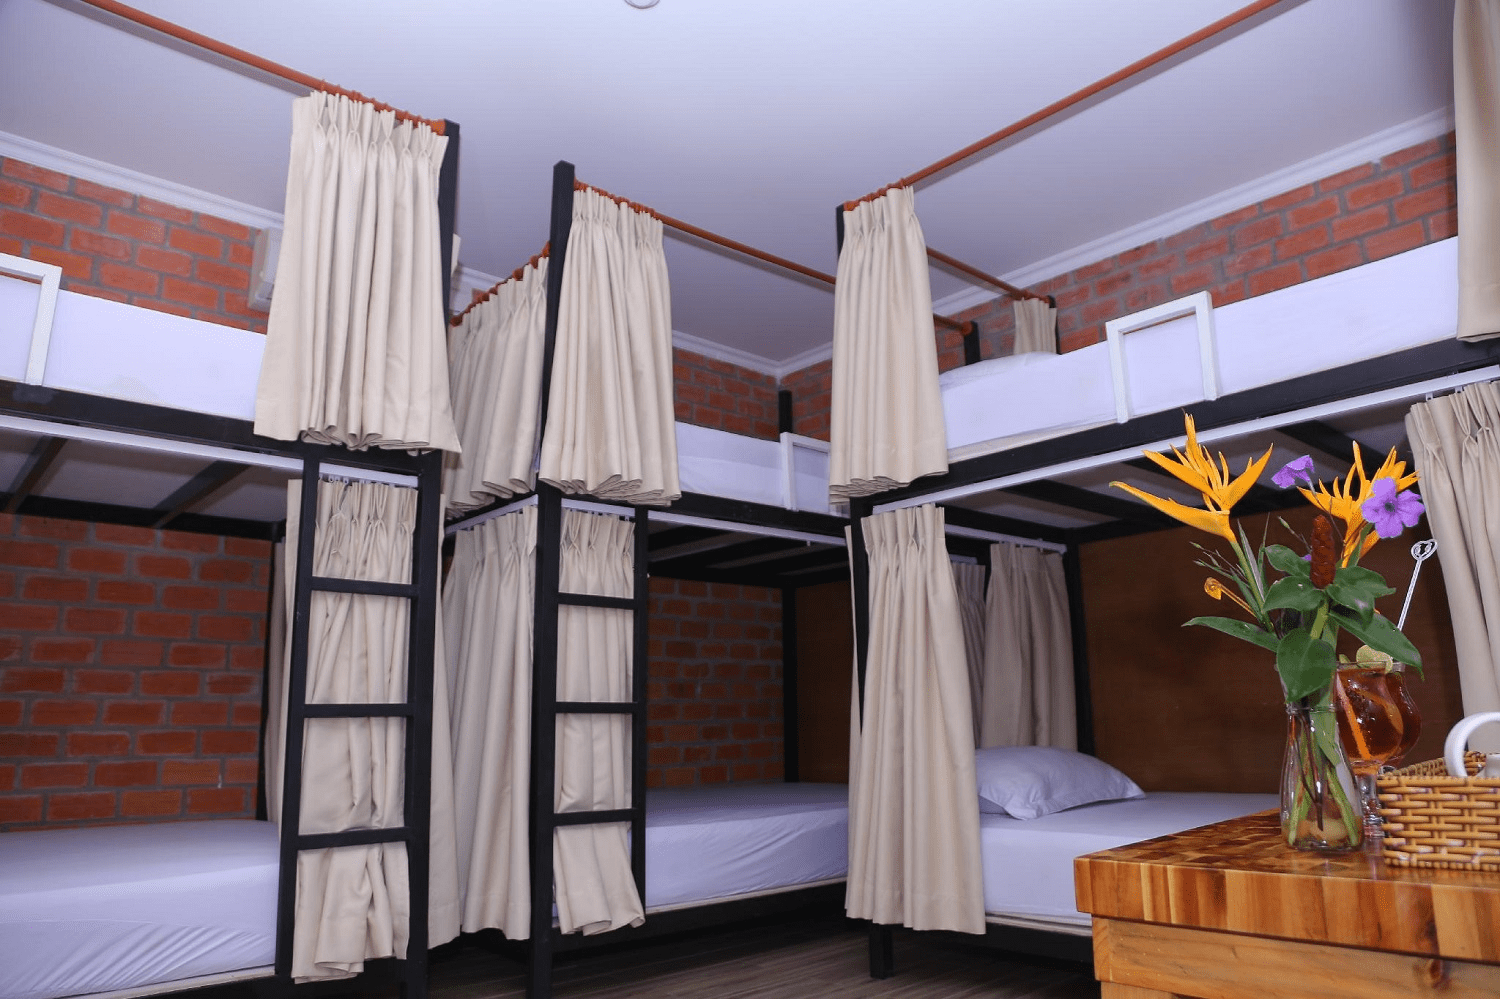 Shared Dormitory, một lựa chọn tiết kiệm tại Arcadia Phú Quốc